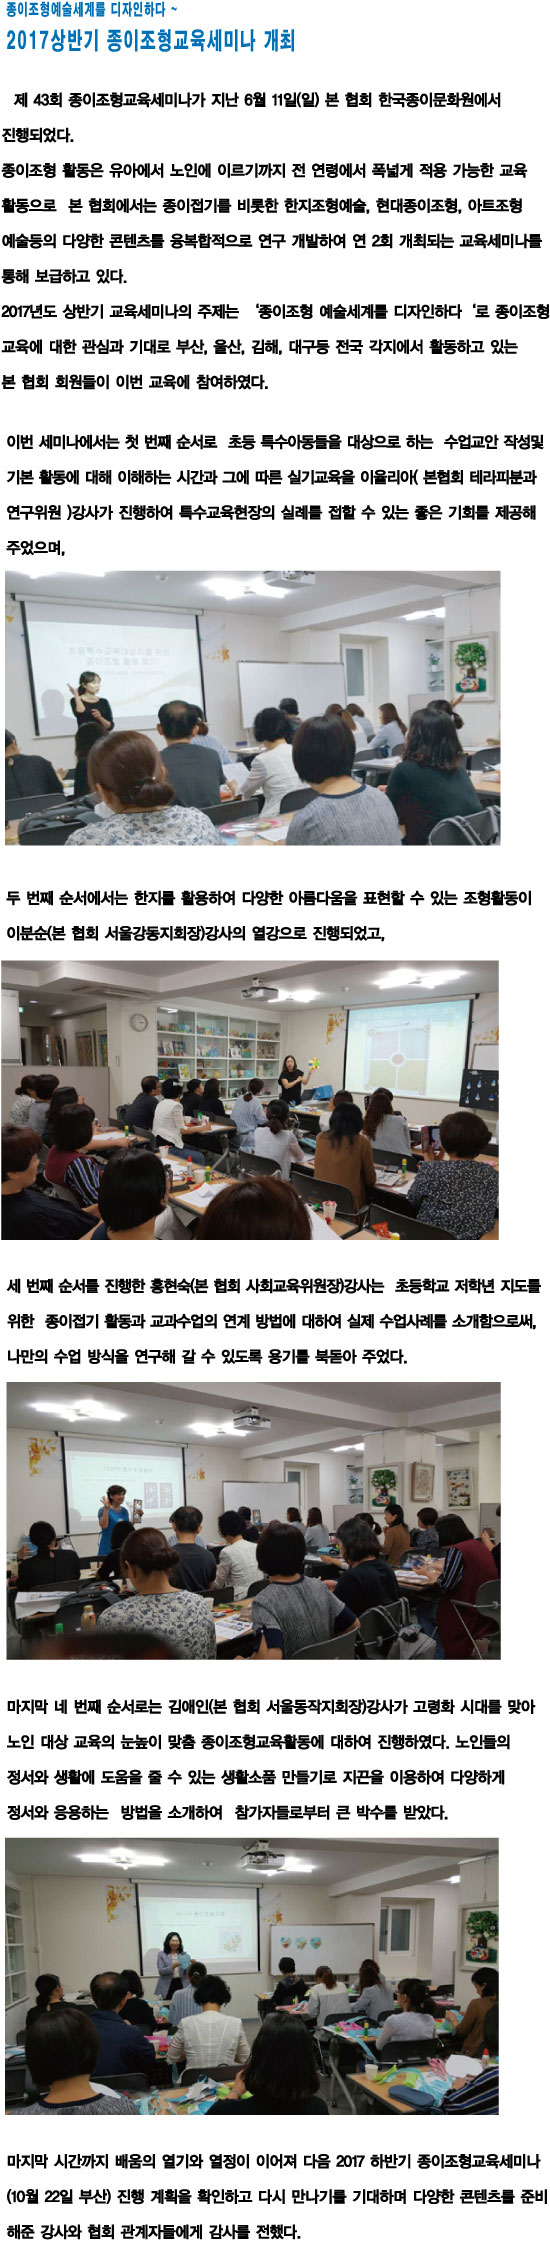 17.06.13 2017 상반기 종이조형교육세미나 개최2.jpg